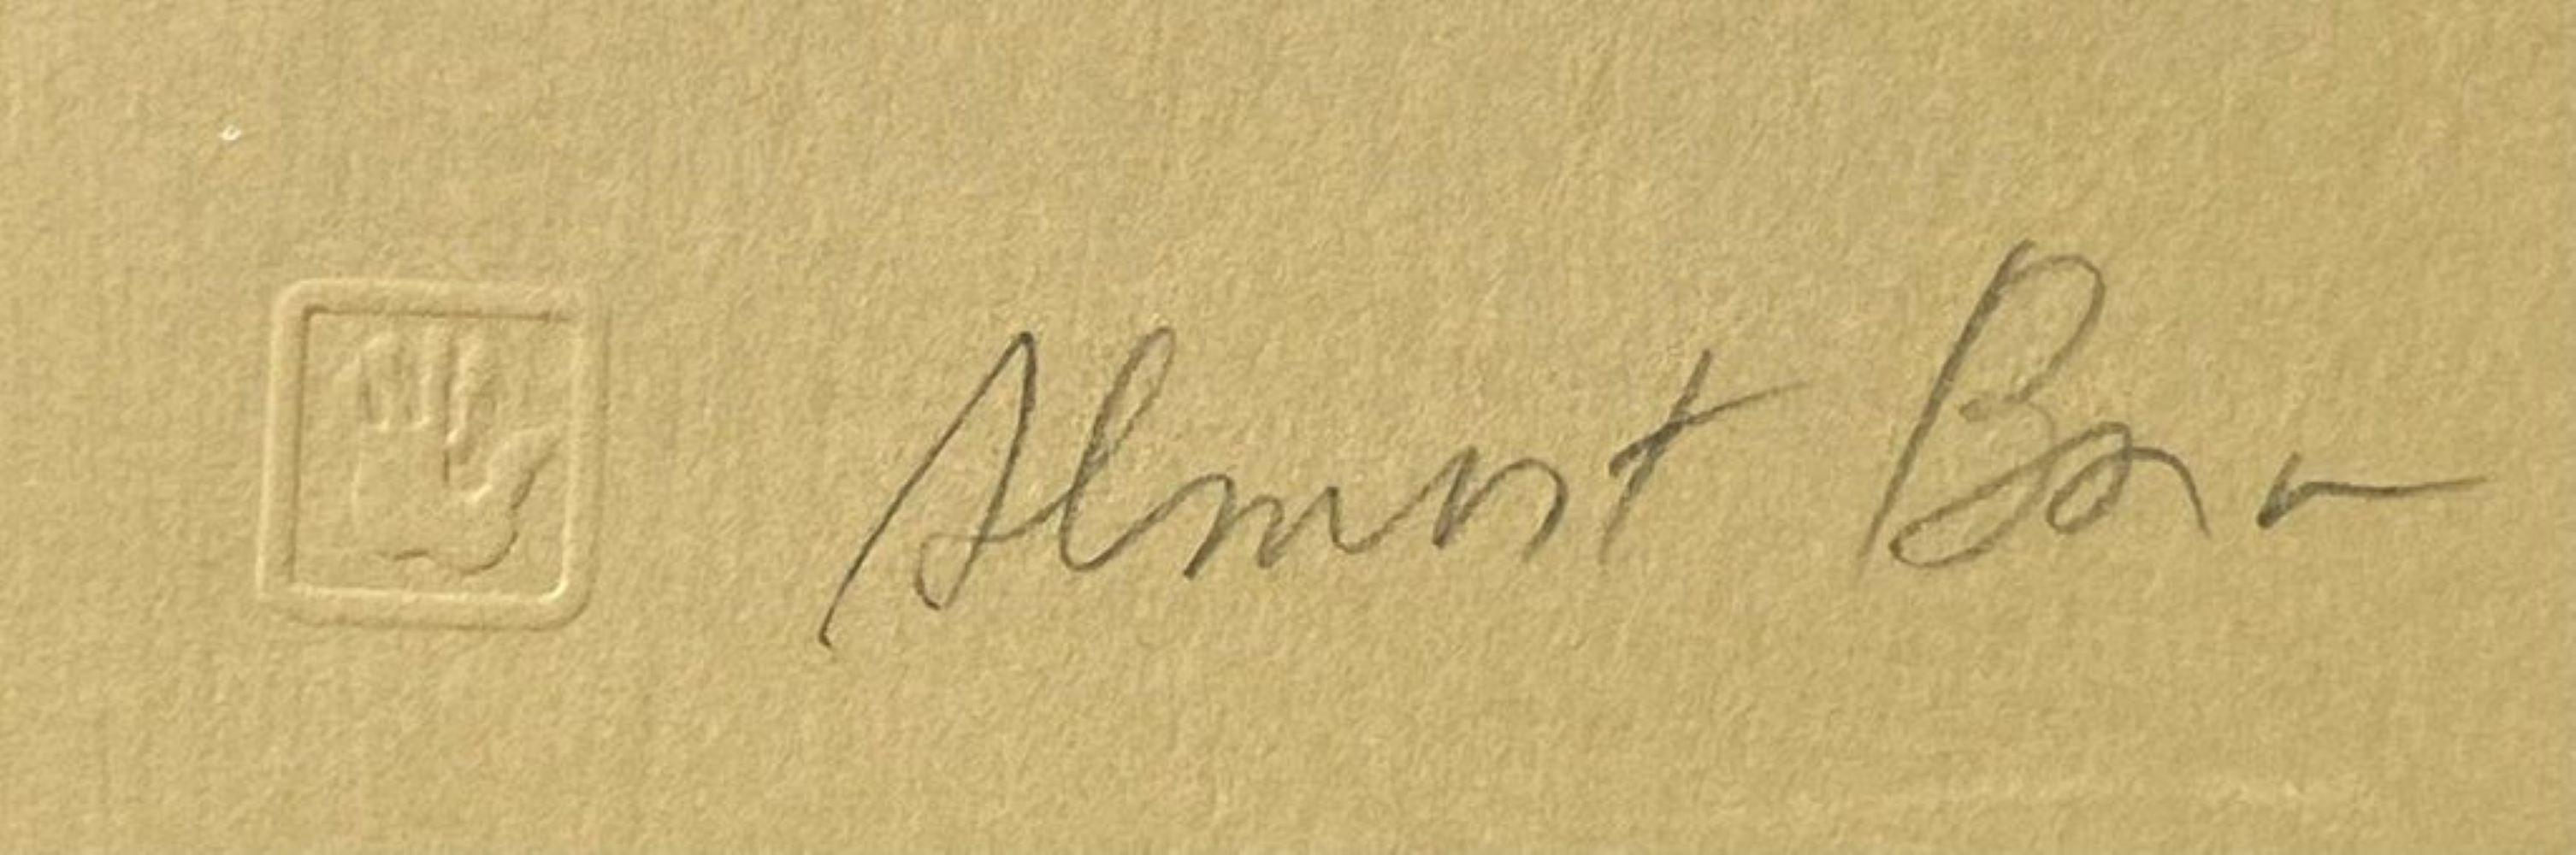 Almost Born (lithographie précoce signée/n d'une artiste féministe de renommée mondiale)  - Contemporain Print par Judy Chicago